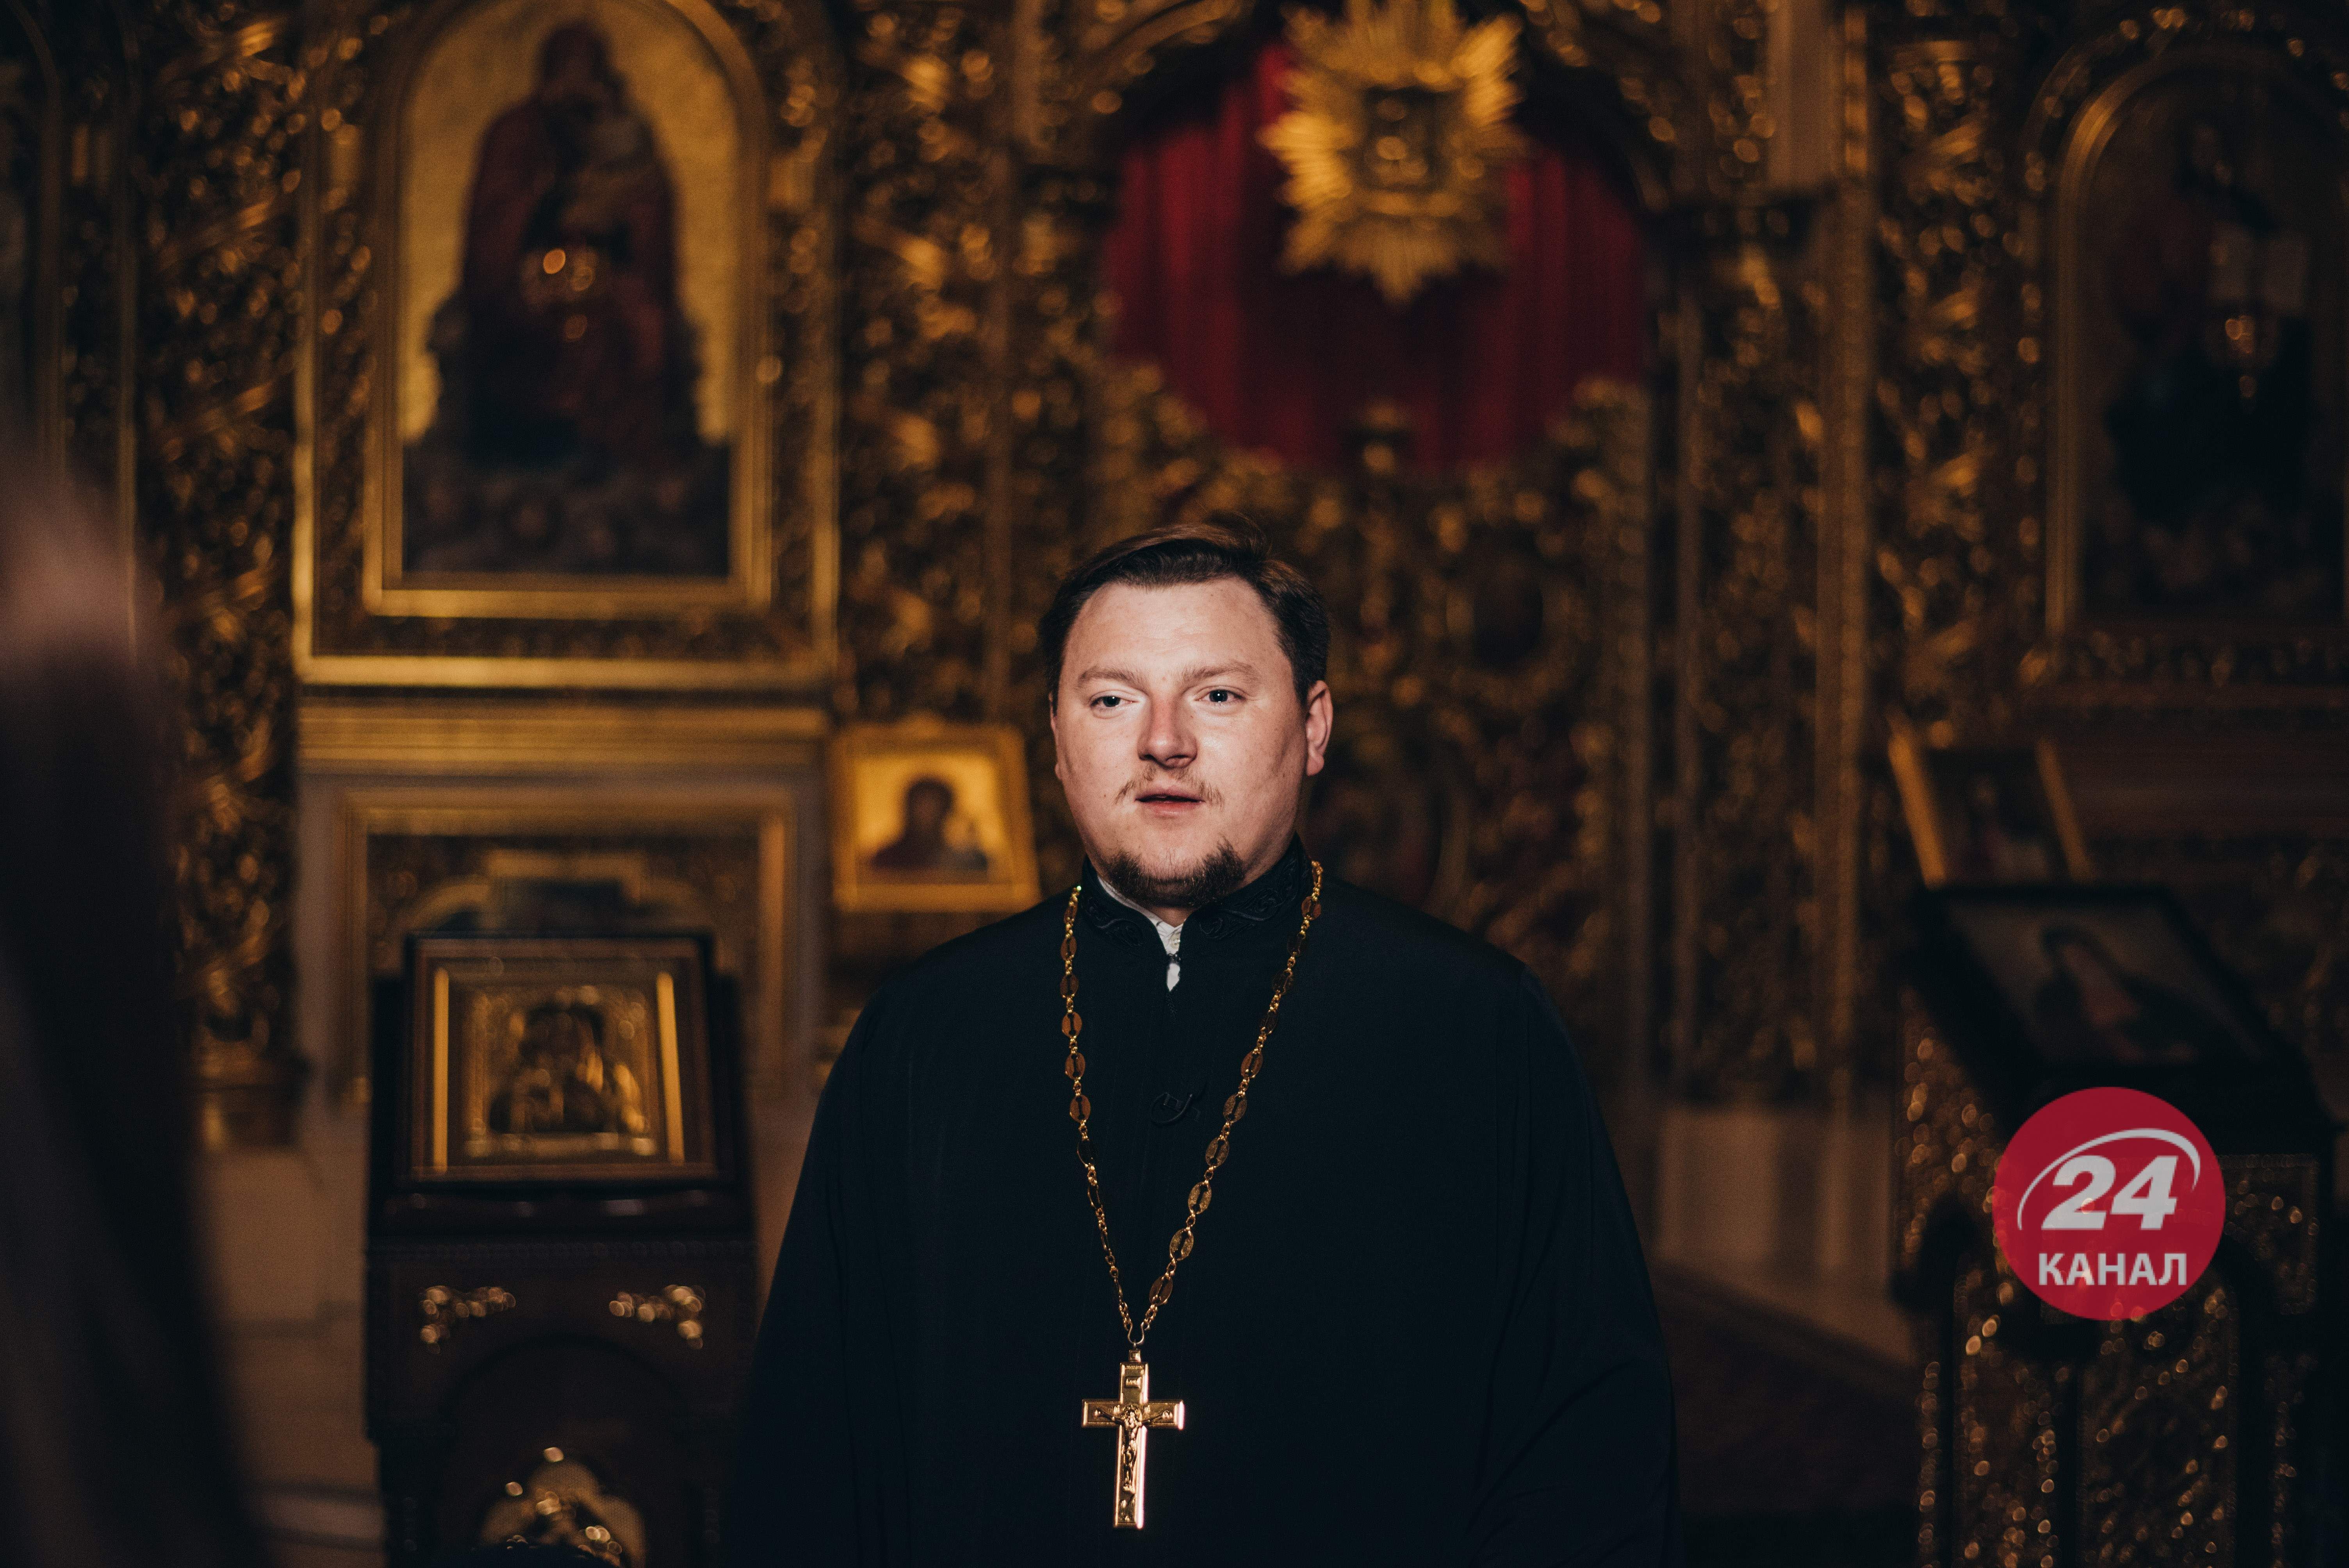 Були погрози, що потрібно "розібратися" за дзвони, – священник про погрози від Януковича - Україна новини - 24 Канал